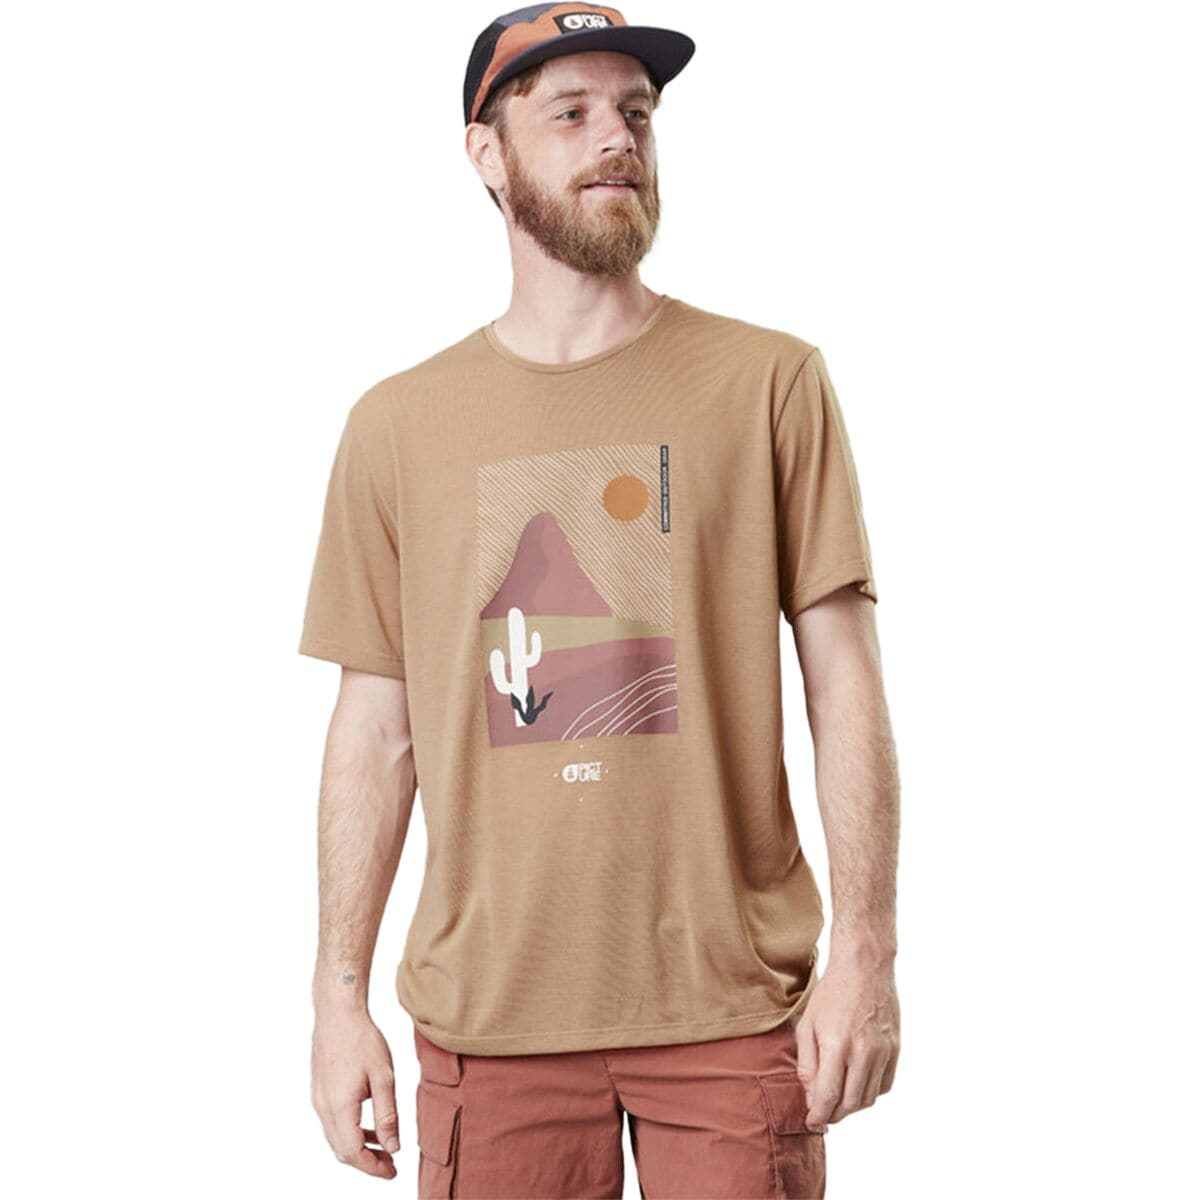 Timont Tech T-Shirt - Men